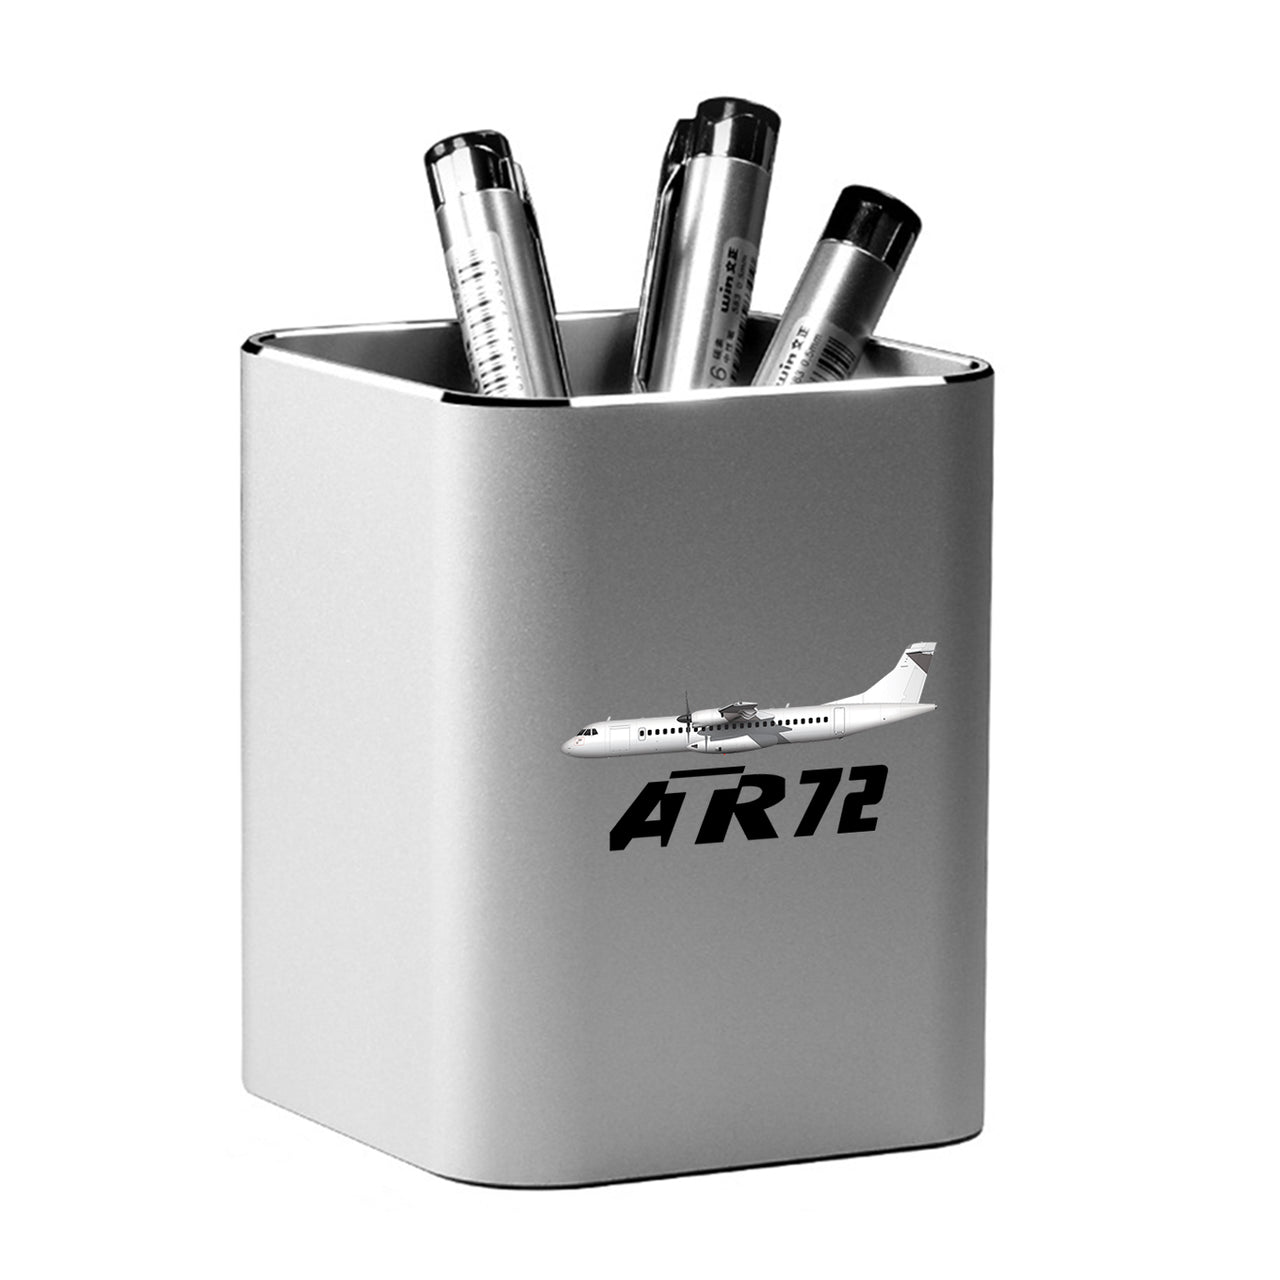 The ATR72 Designed Aluminium Alloy Pen Holders